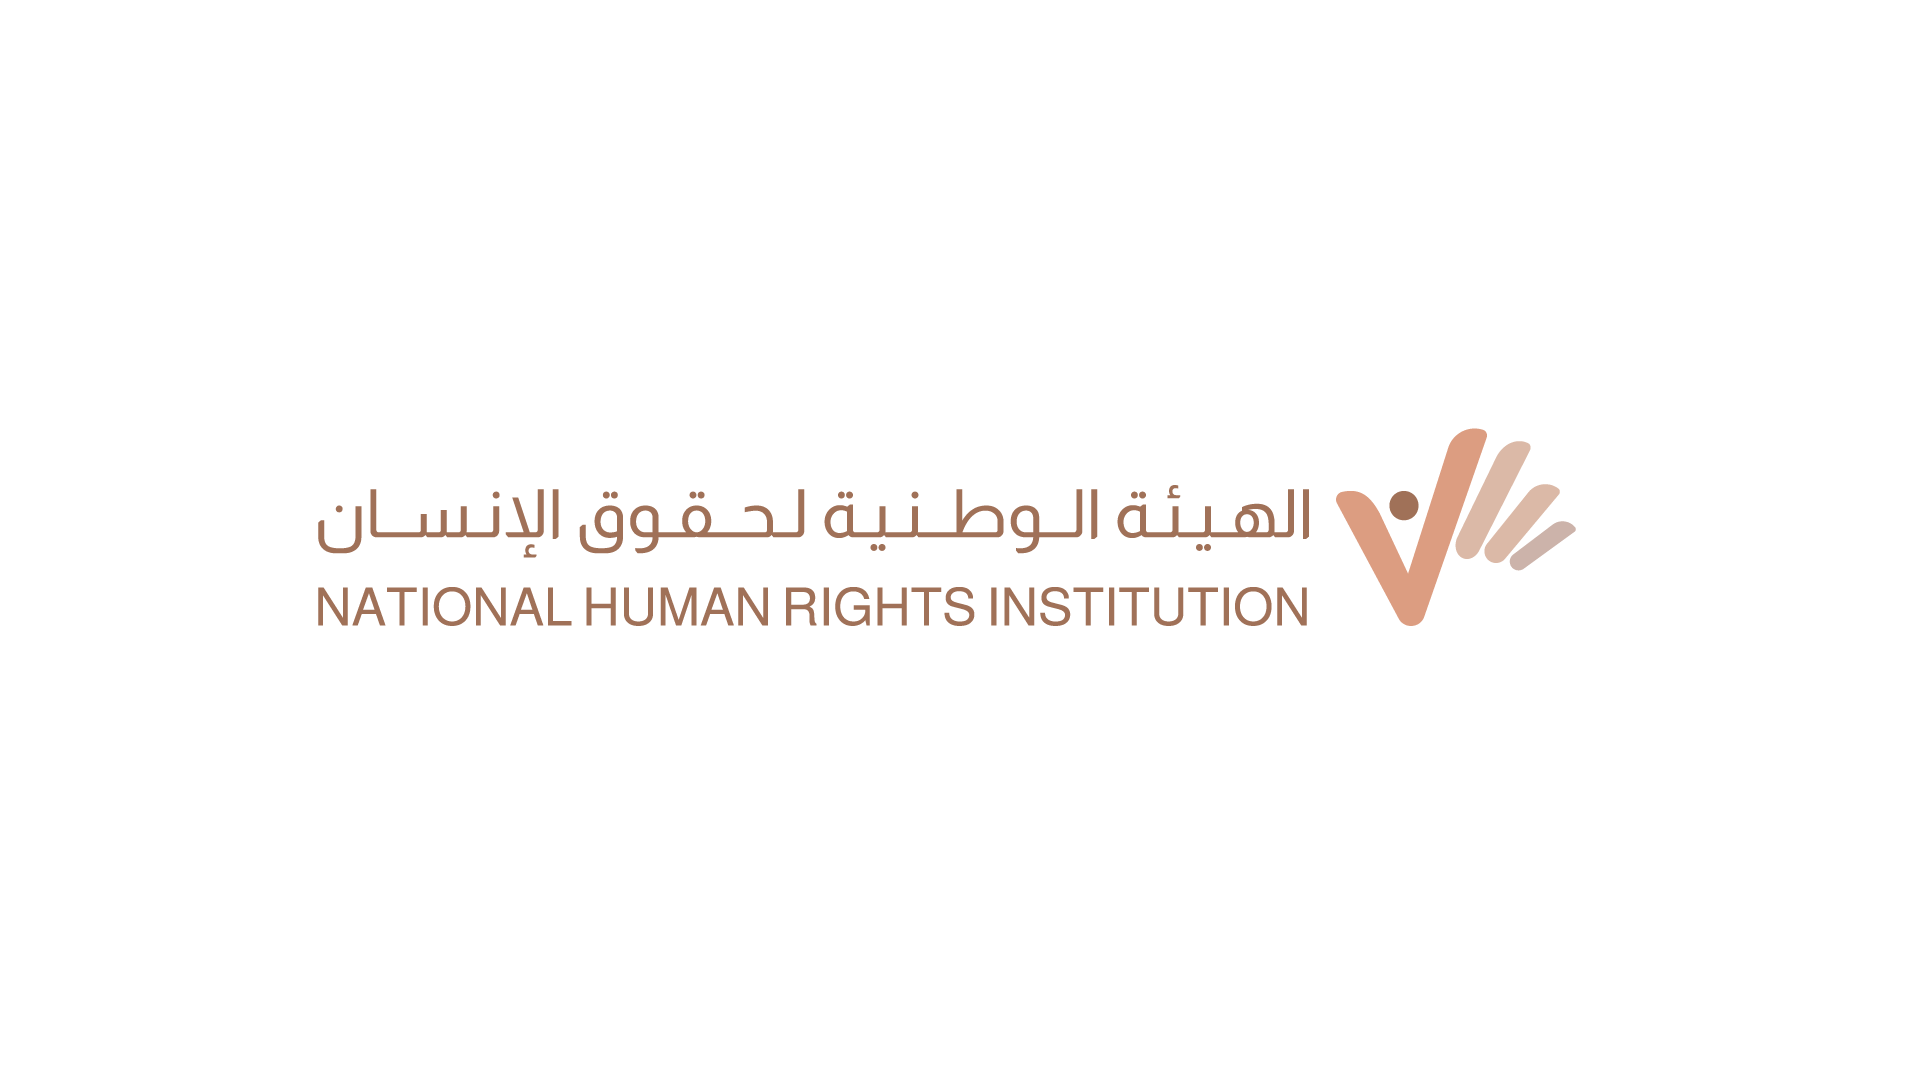 الذكرى السنوية الأولى لتشكيل الهيئة الوطنية لحقوق الإنسان: مسيرة التأسيس وانطلاقةُ التدشين